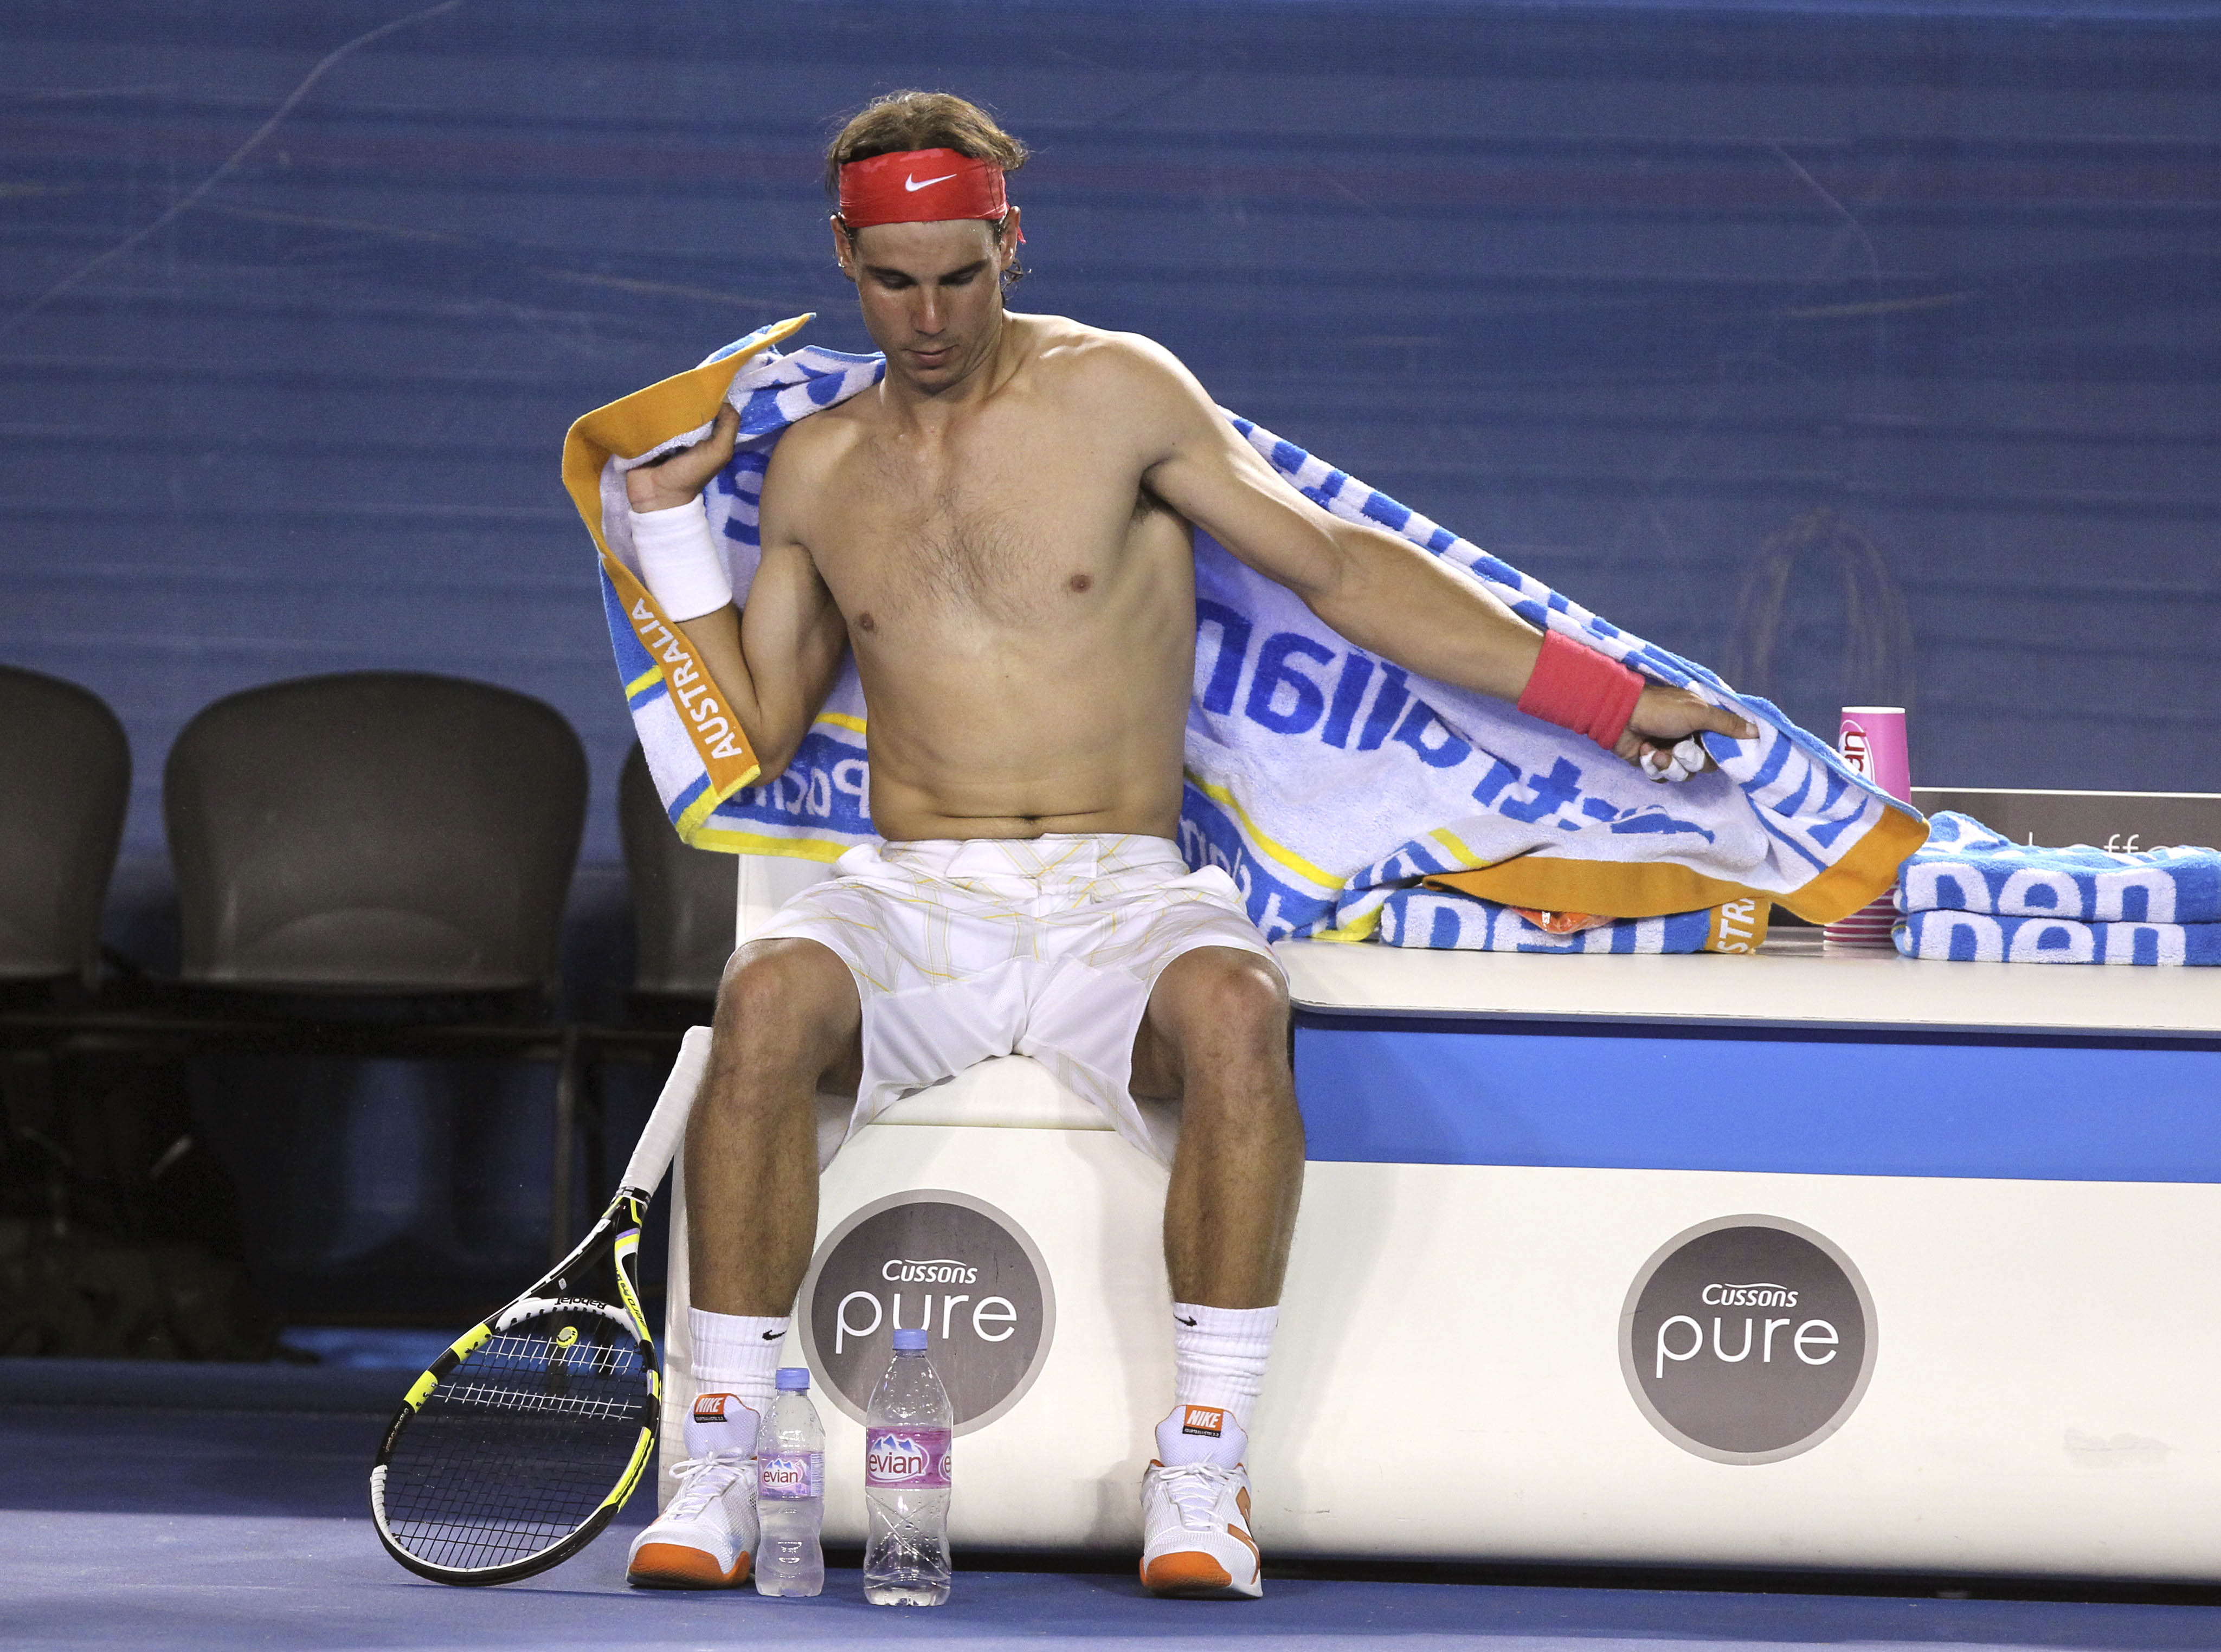 Nadal torkar sig efter ännu en svettig match. 